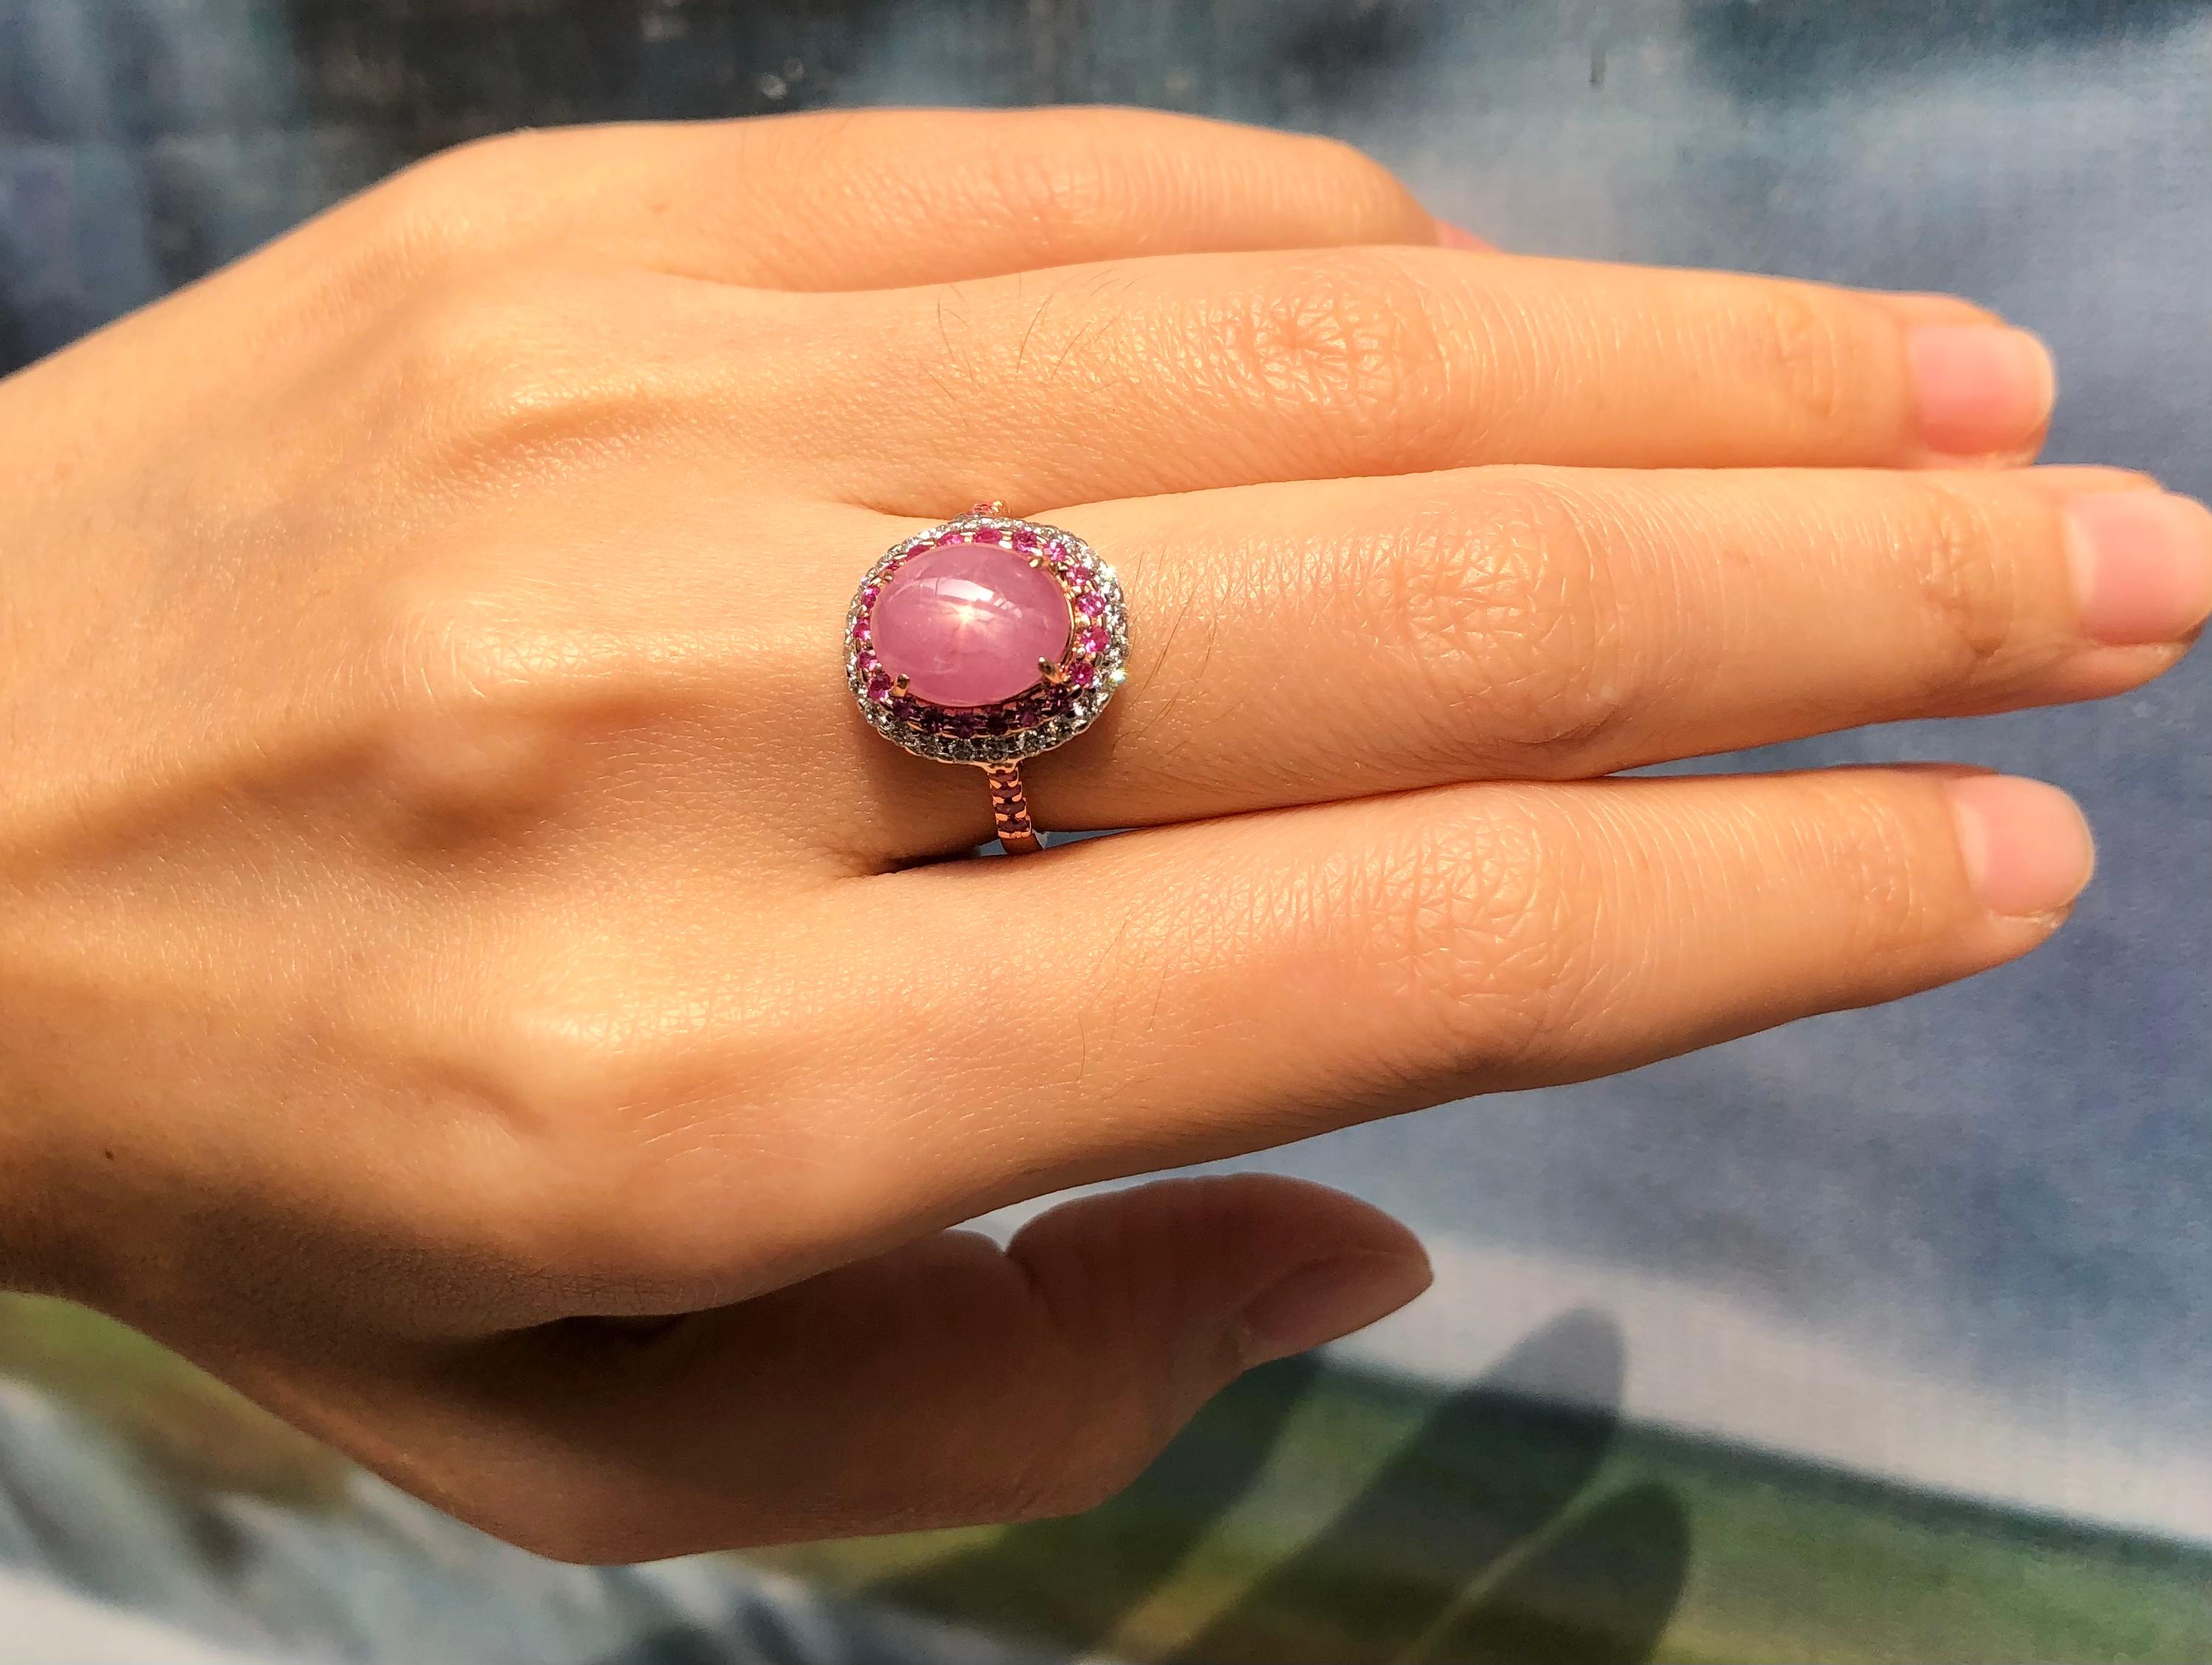 Star Pink Sapphire 4,09 Karat mit Pink Sapphire 0,32 Karat und Diamant 0,25 Karat Ring in 18 Karat Roségold gefasst
(GIT-zertifiziert, das Edelstein- und Schmuckinstitut von Thailand)

Breite:  1.2 cm 
Länge: 1,5 cm
Ringgröße: 51
Gesamtgewicht: 4,29